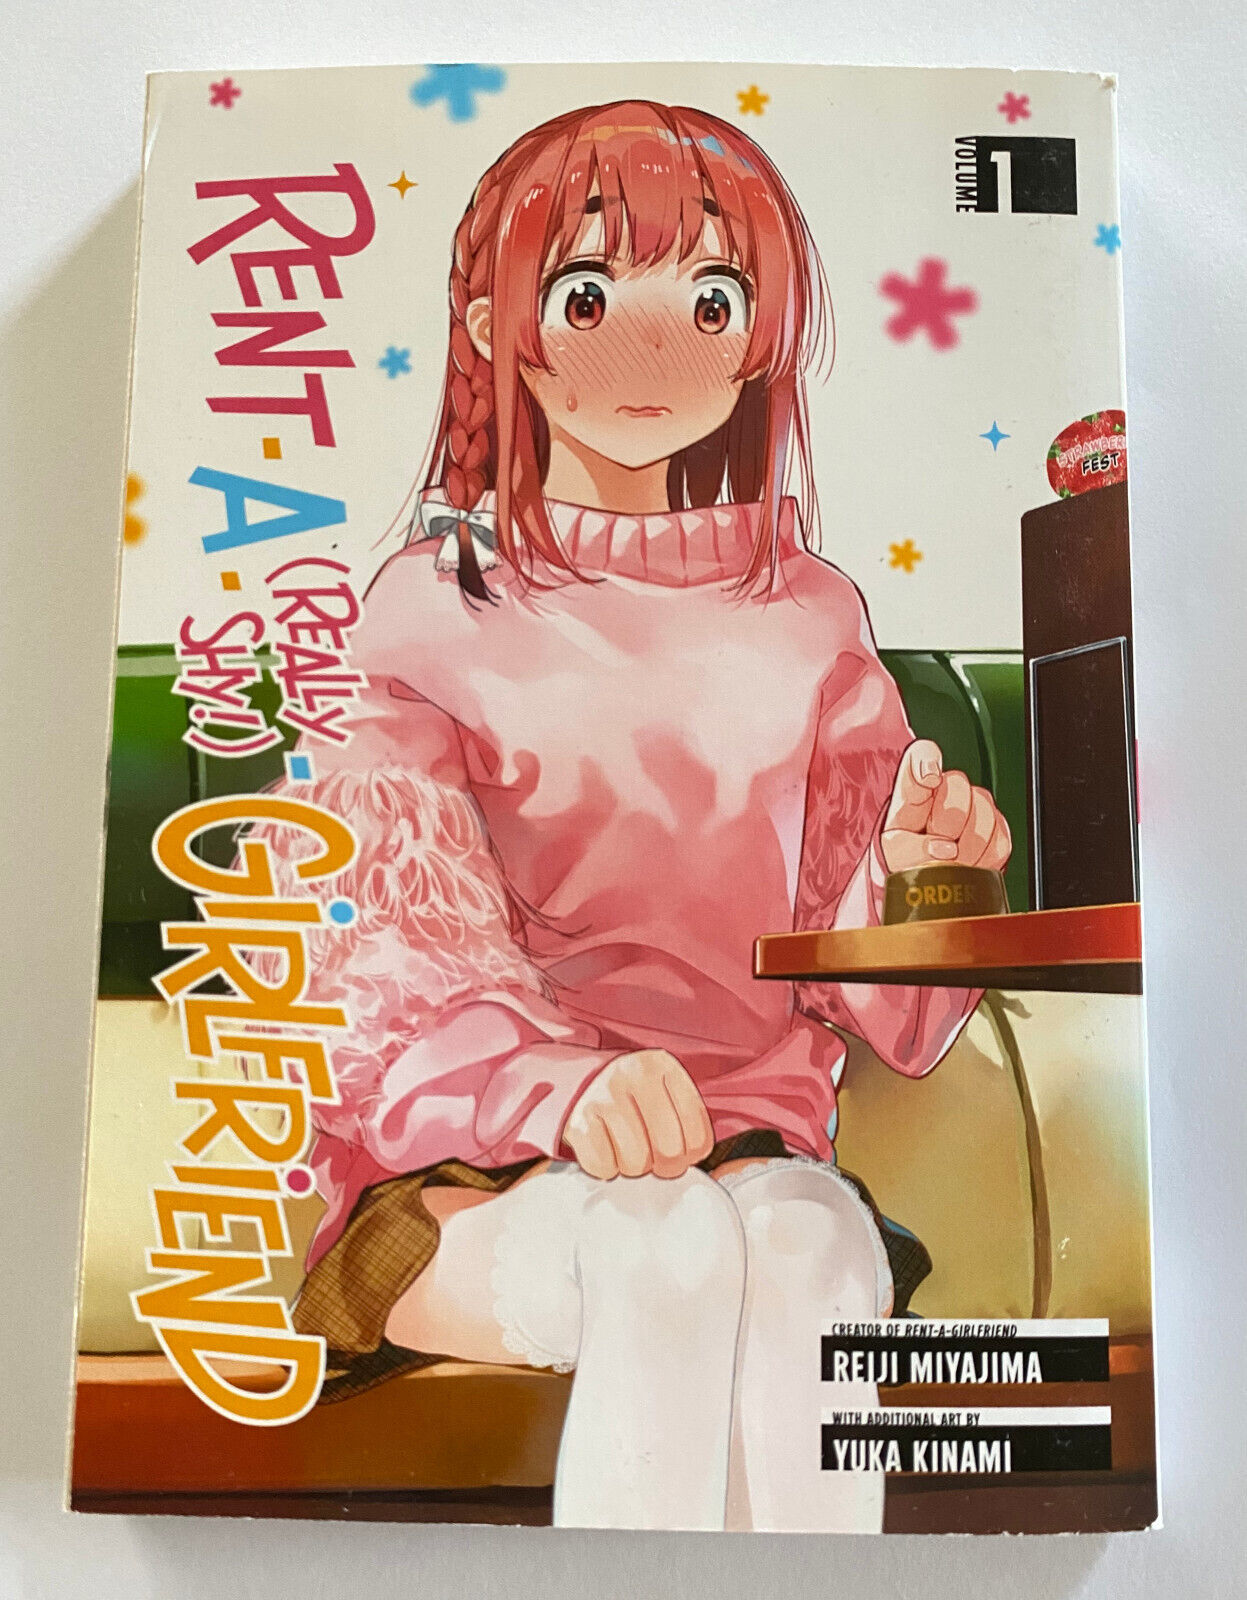 Rent A Really Shy Girlfriend Vol 1 Manga Anime Reiji Miyajima Kodansha English